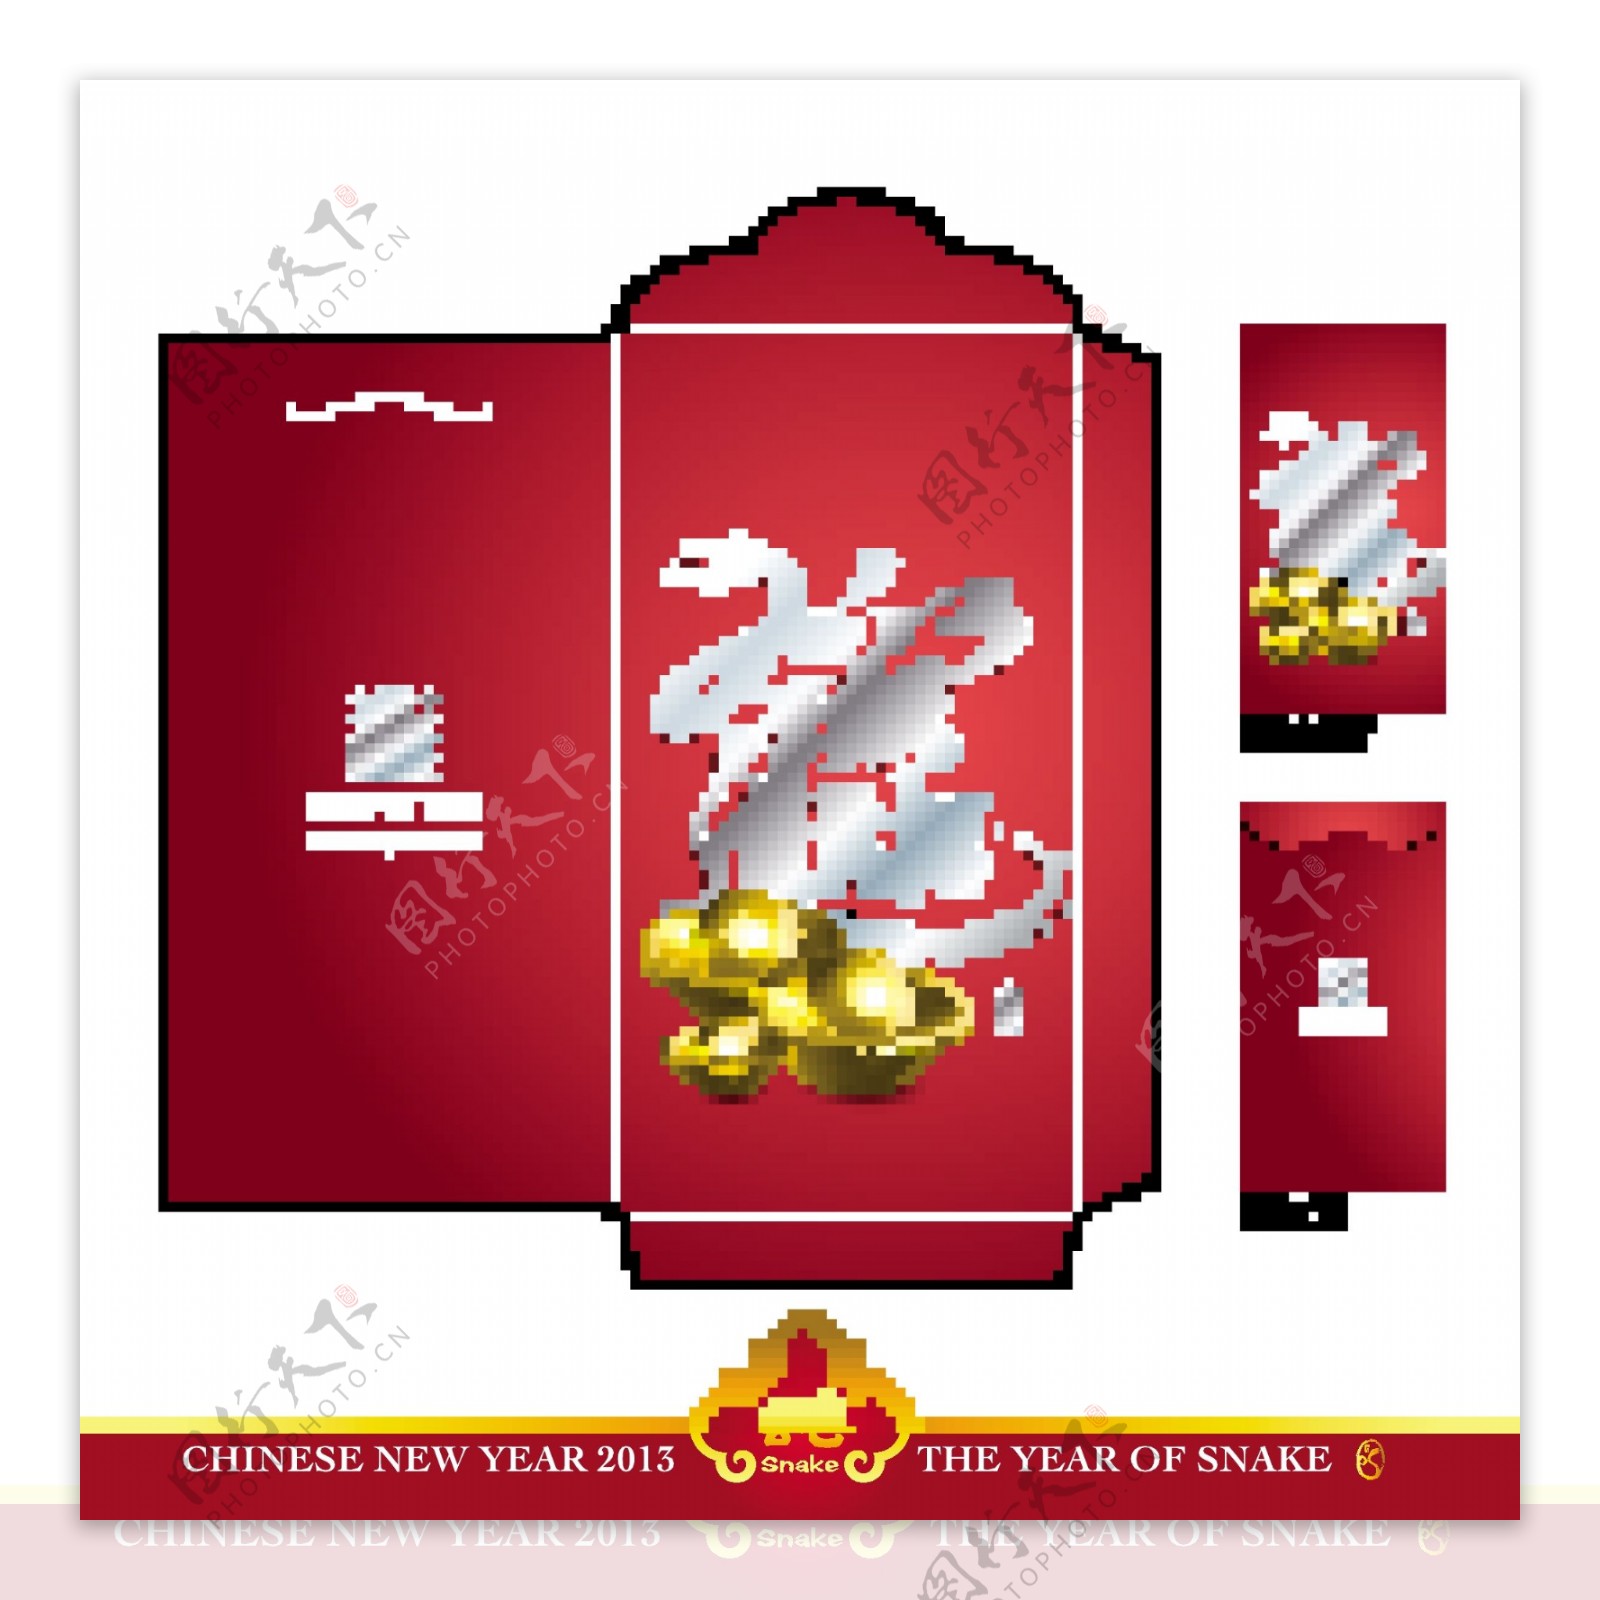 中国的新年红包红包与蛇翻译模切年设计2013带来繁荣